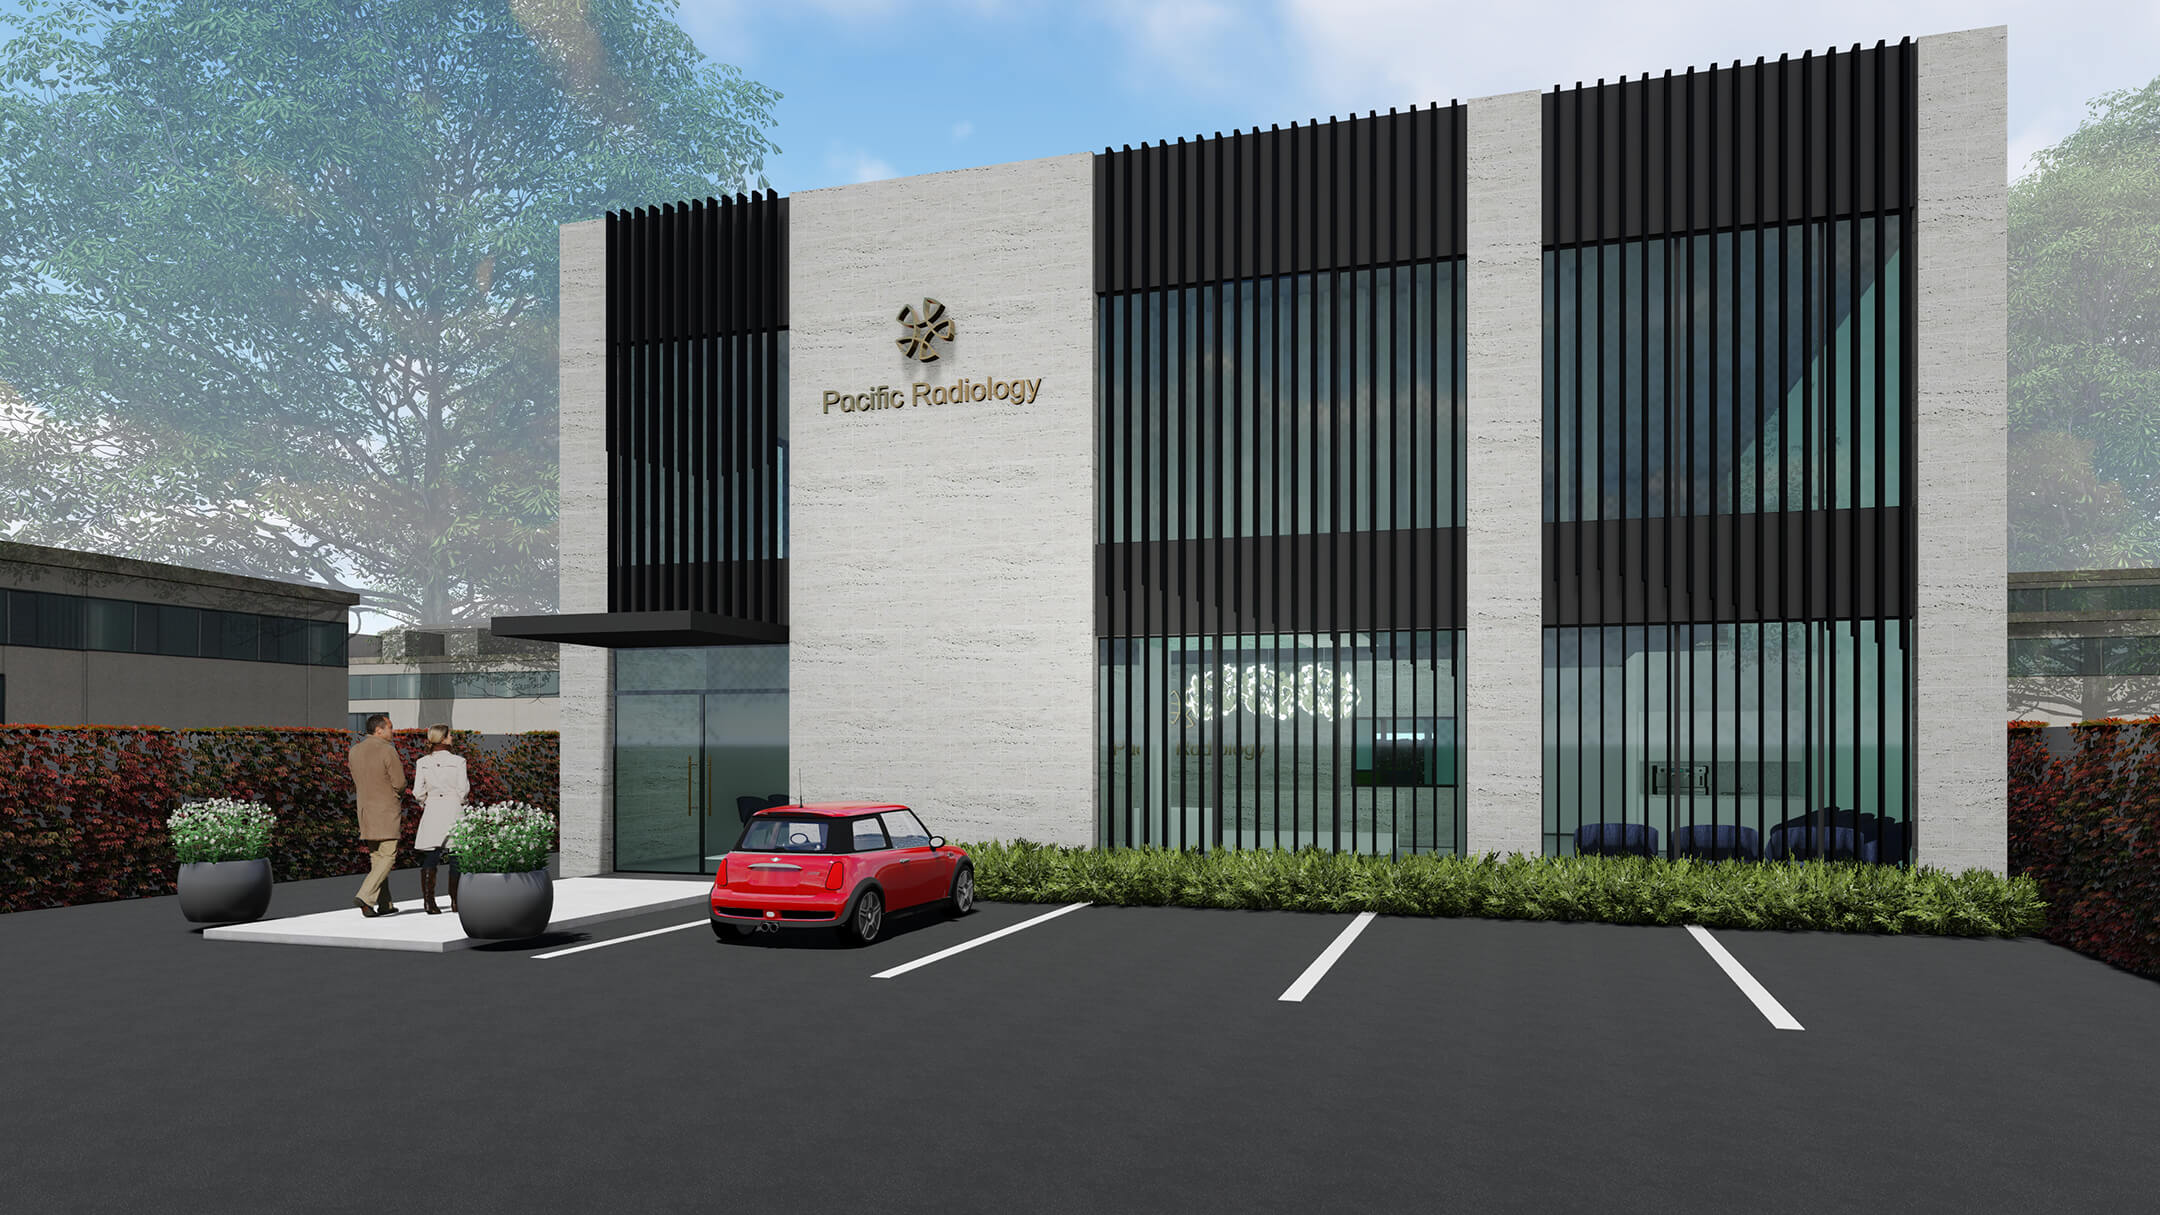 Pacific Radiology new medical facility Whanganui